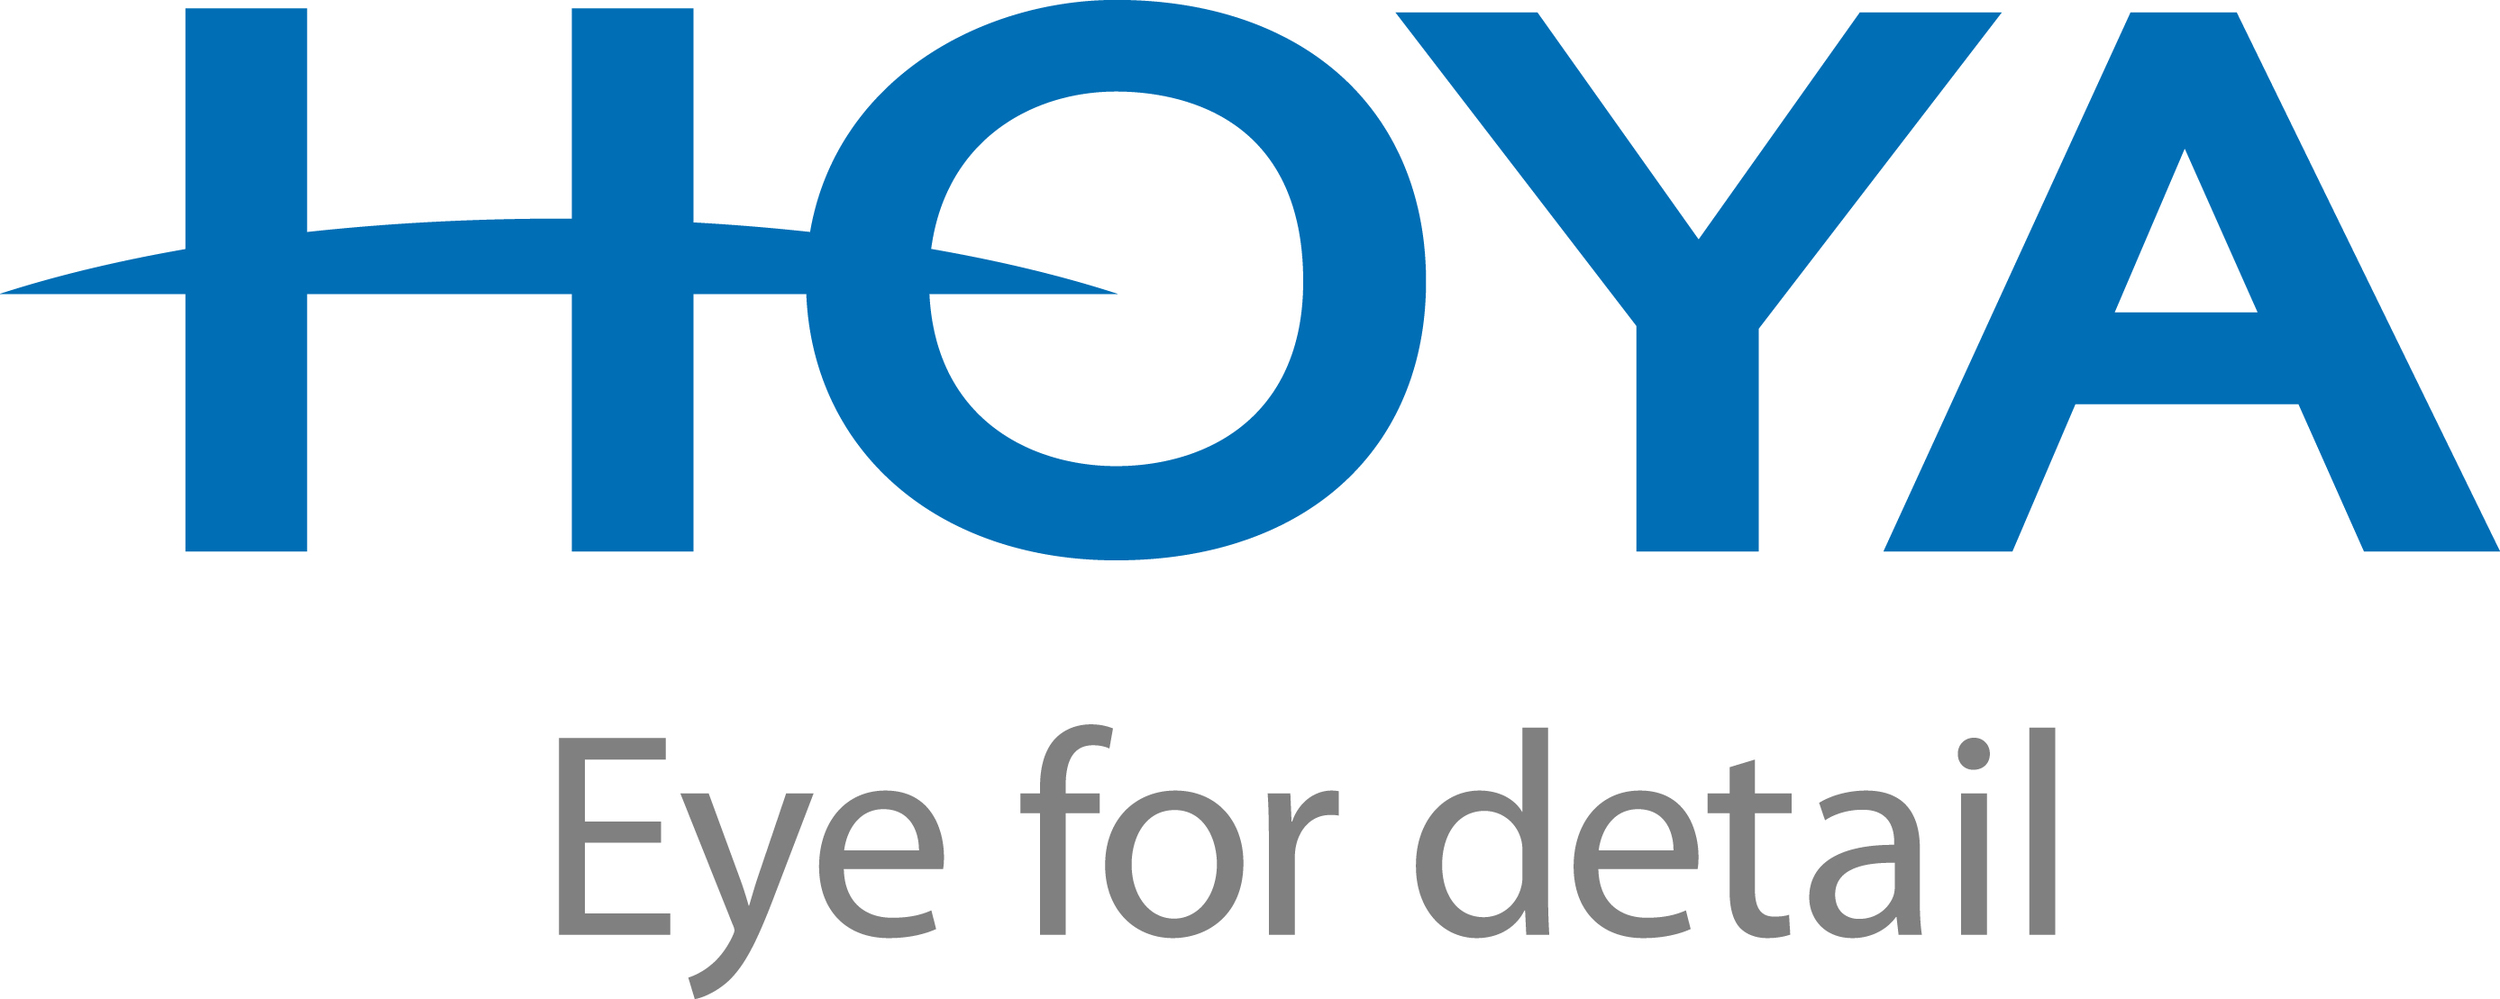 Hoya logotype RGB.jpg